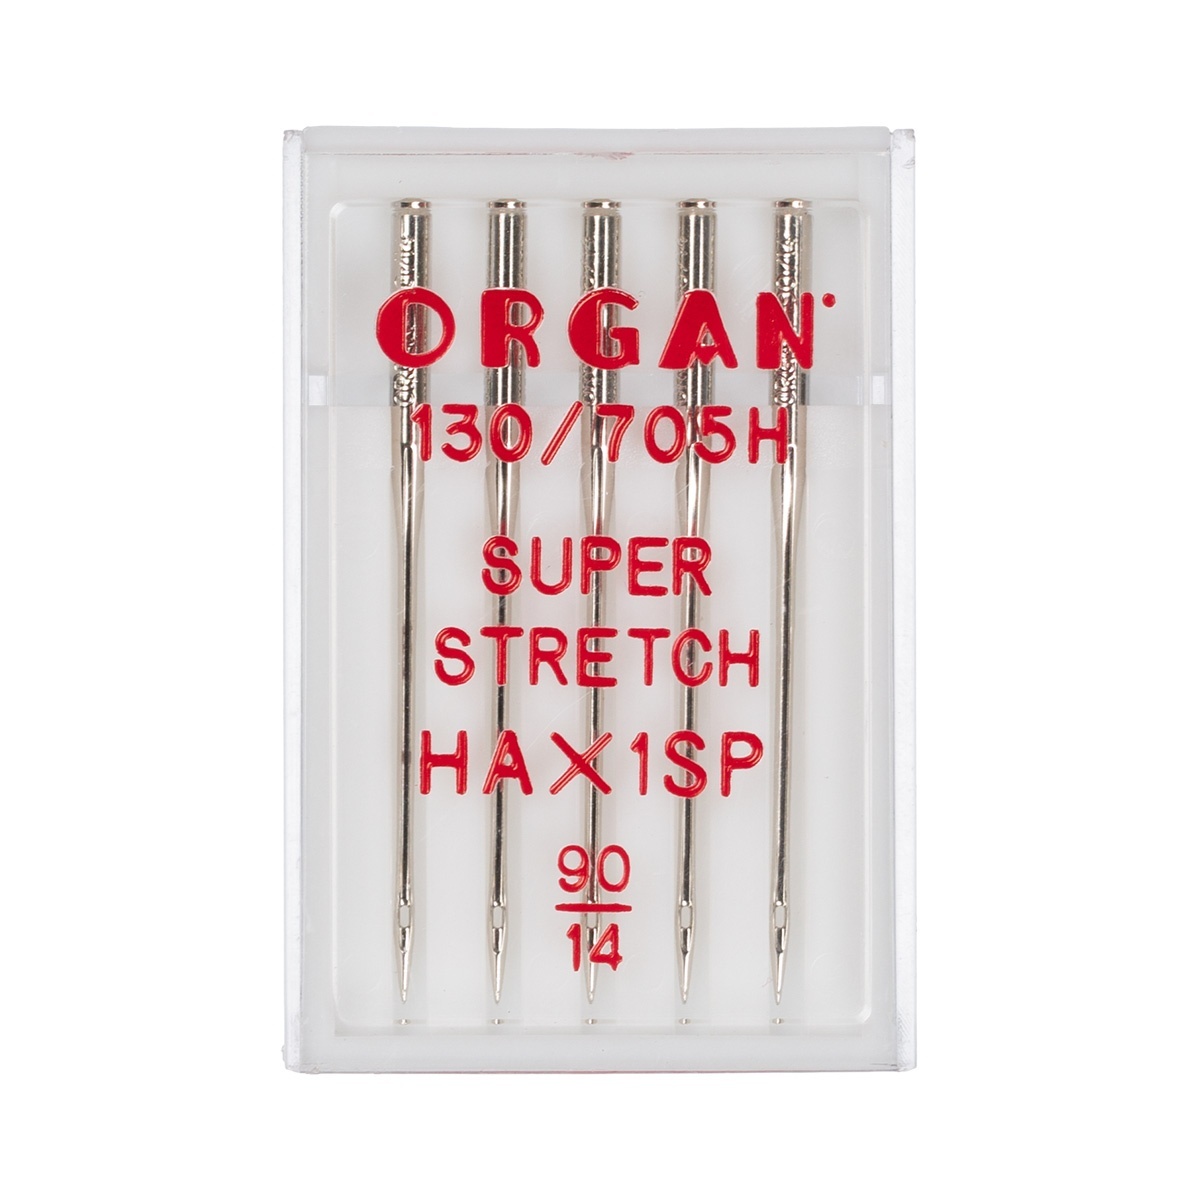 Иглы для швейной машинки купить. Иглы Organ универсальные 130/705 для БШМ уп. 5 Игл. Organ иглы супер стрейч 5/75-90. Игла/иглы Organ super stretch 90. Иглы Organ 80 супер стрейч.